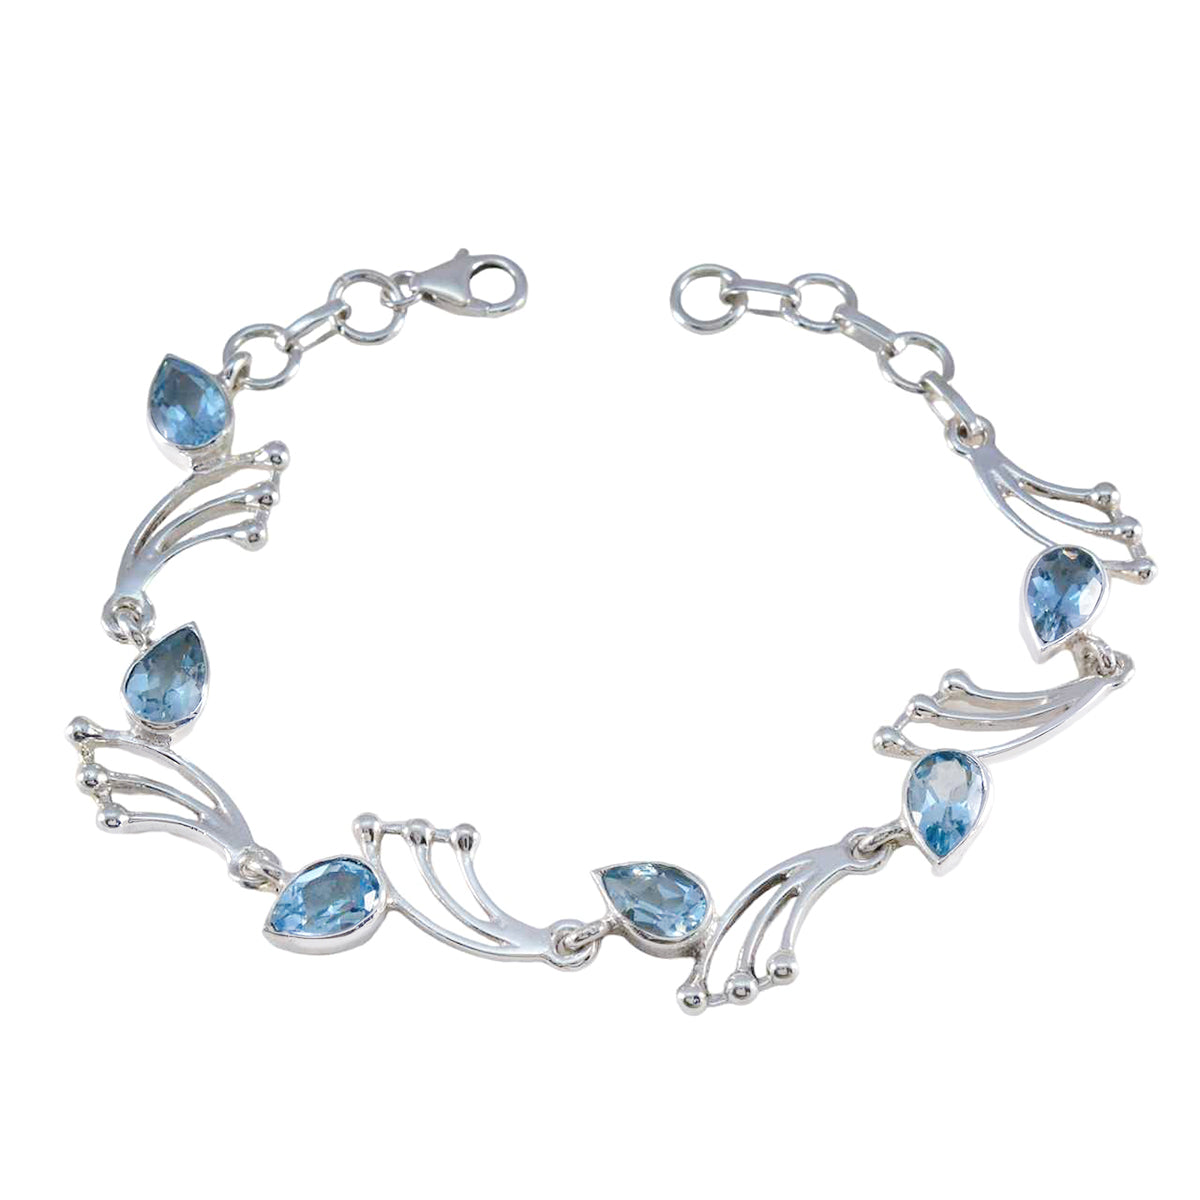 riyo attraktiva 925 sterling silver armband för kvinnor blå topas armband stift inställning armband med fisk krok länk armband l storlek 6-8,5 tum.